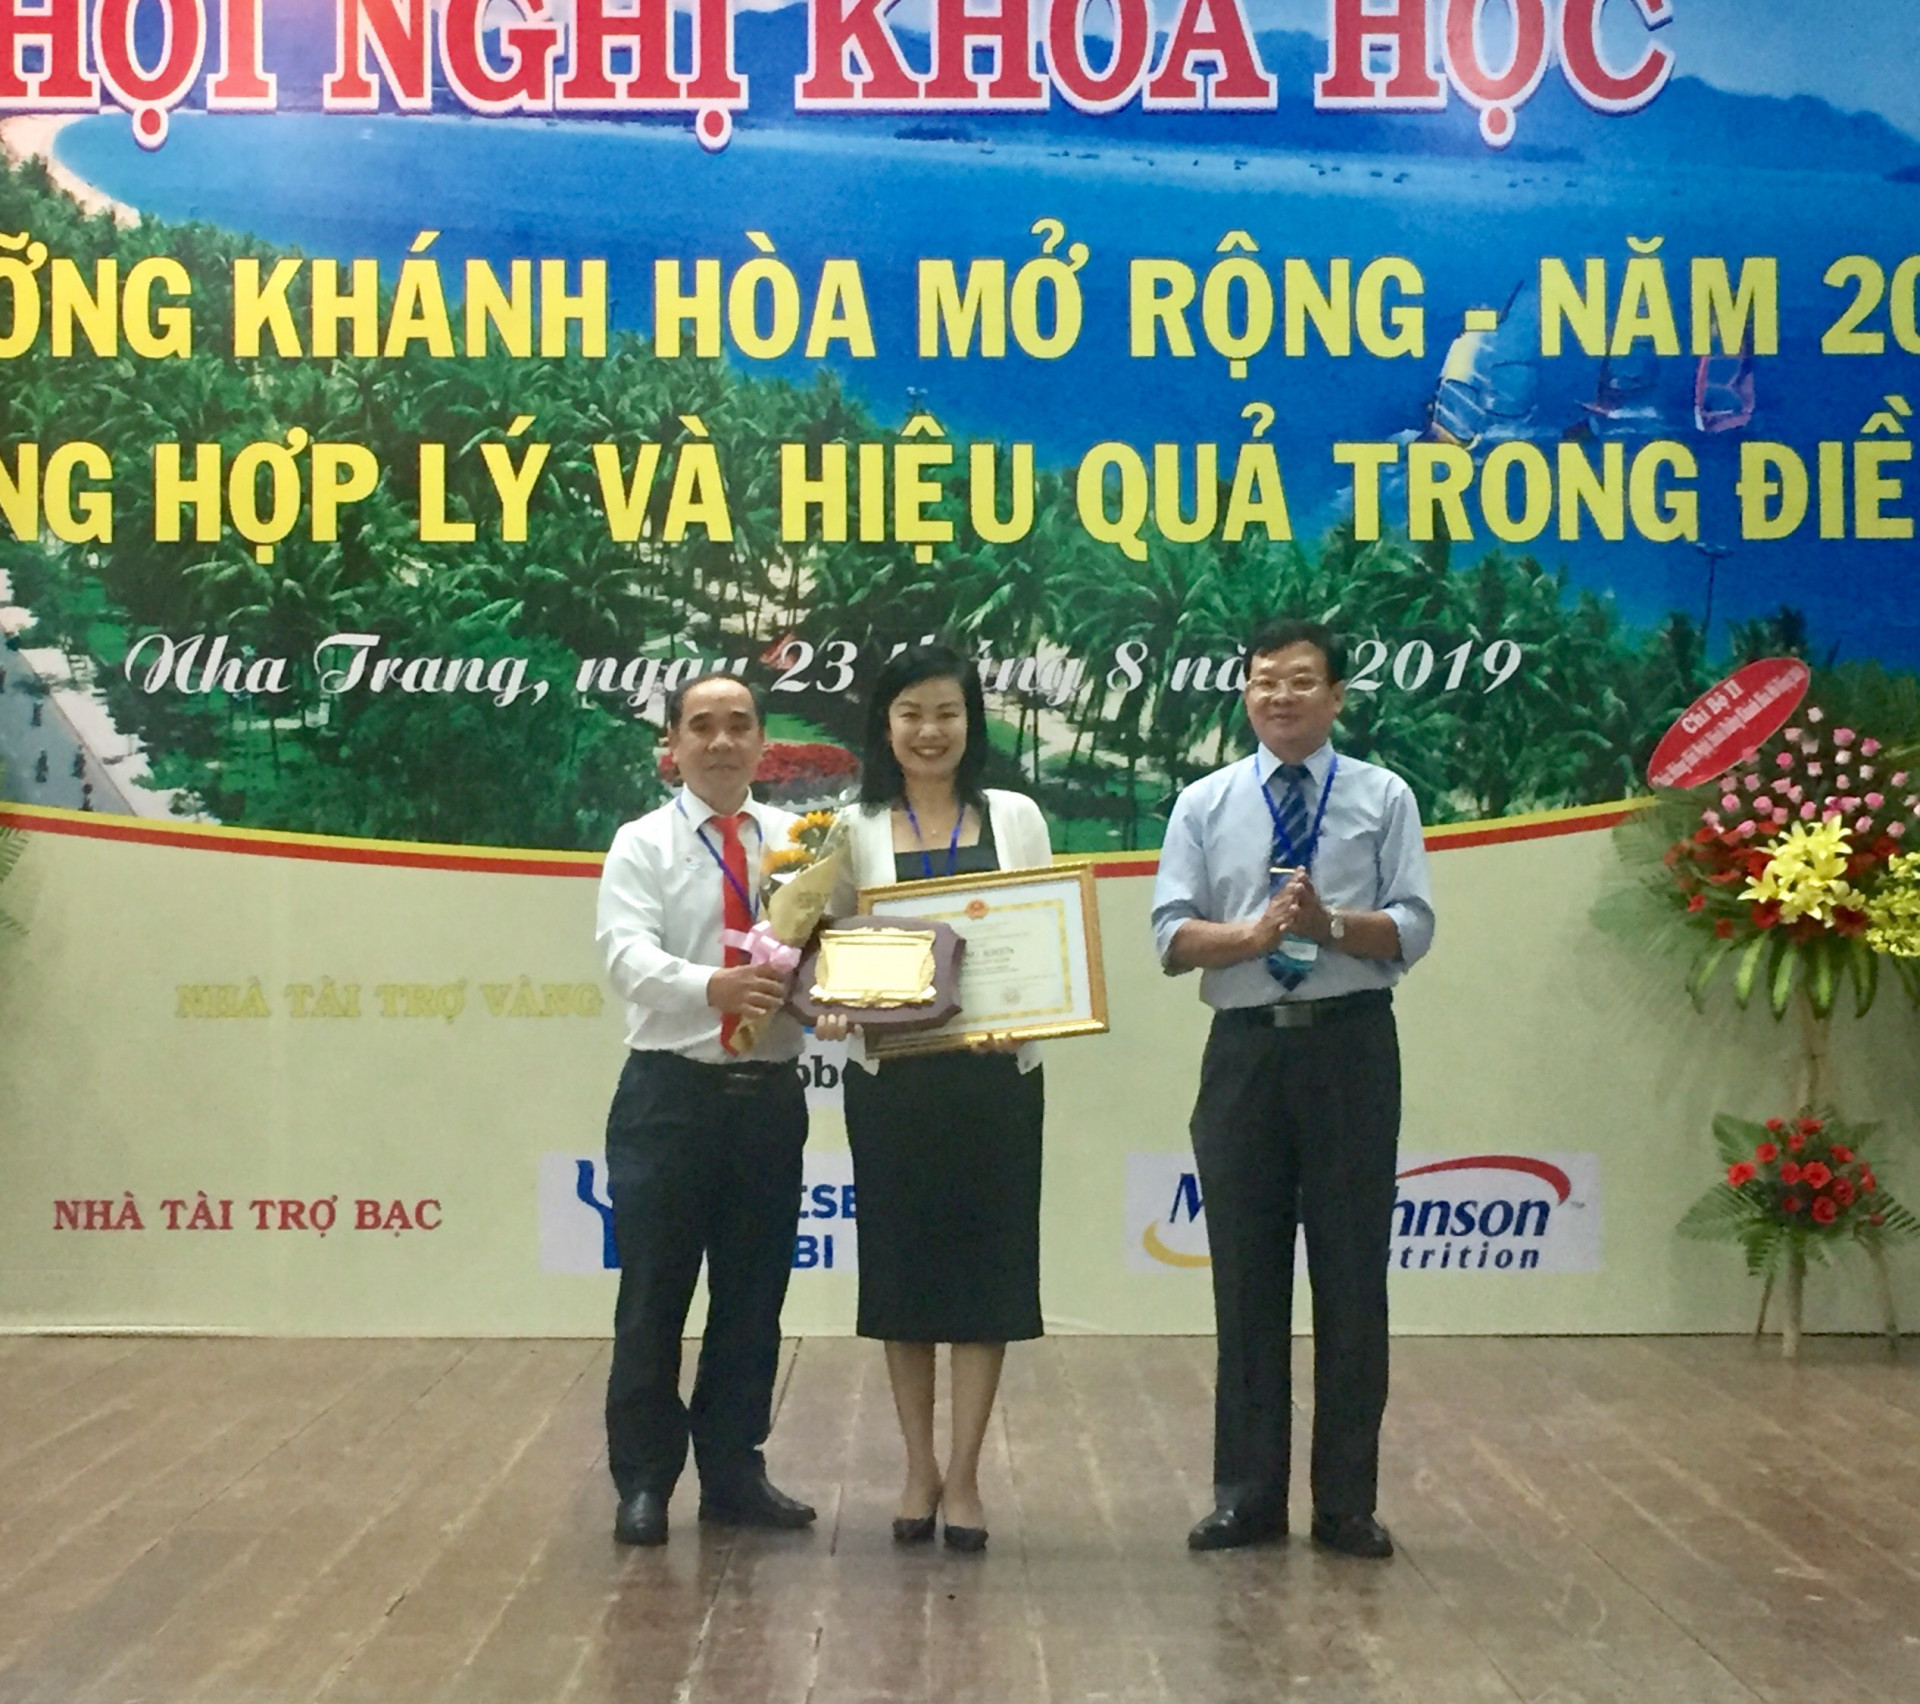 Bà Lưu Ngân Tâm nhận được bằng khen của UBND tỉnh Khánh Hoà